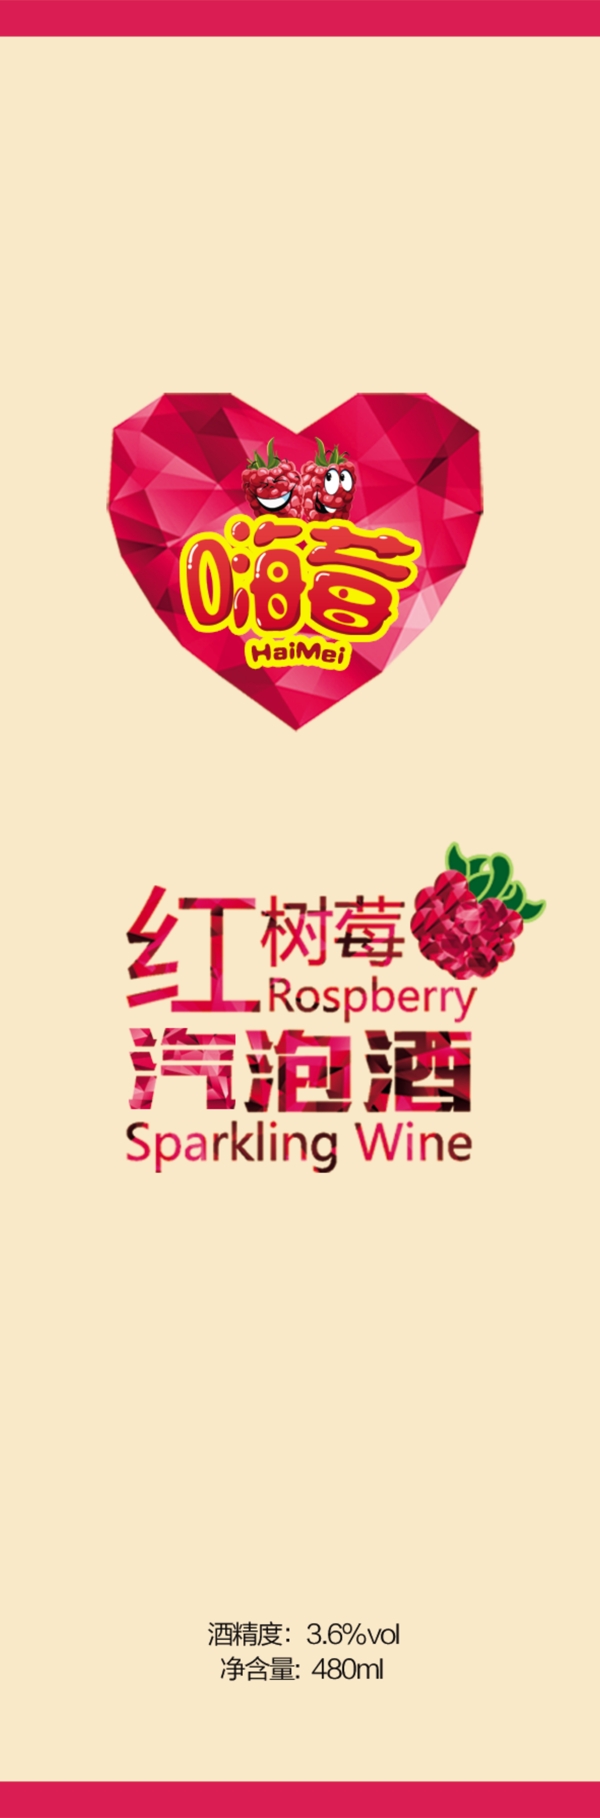 红树莓酒标